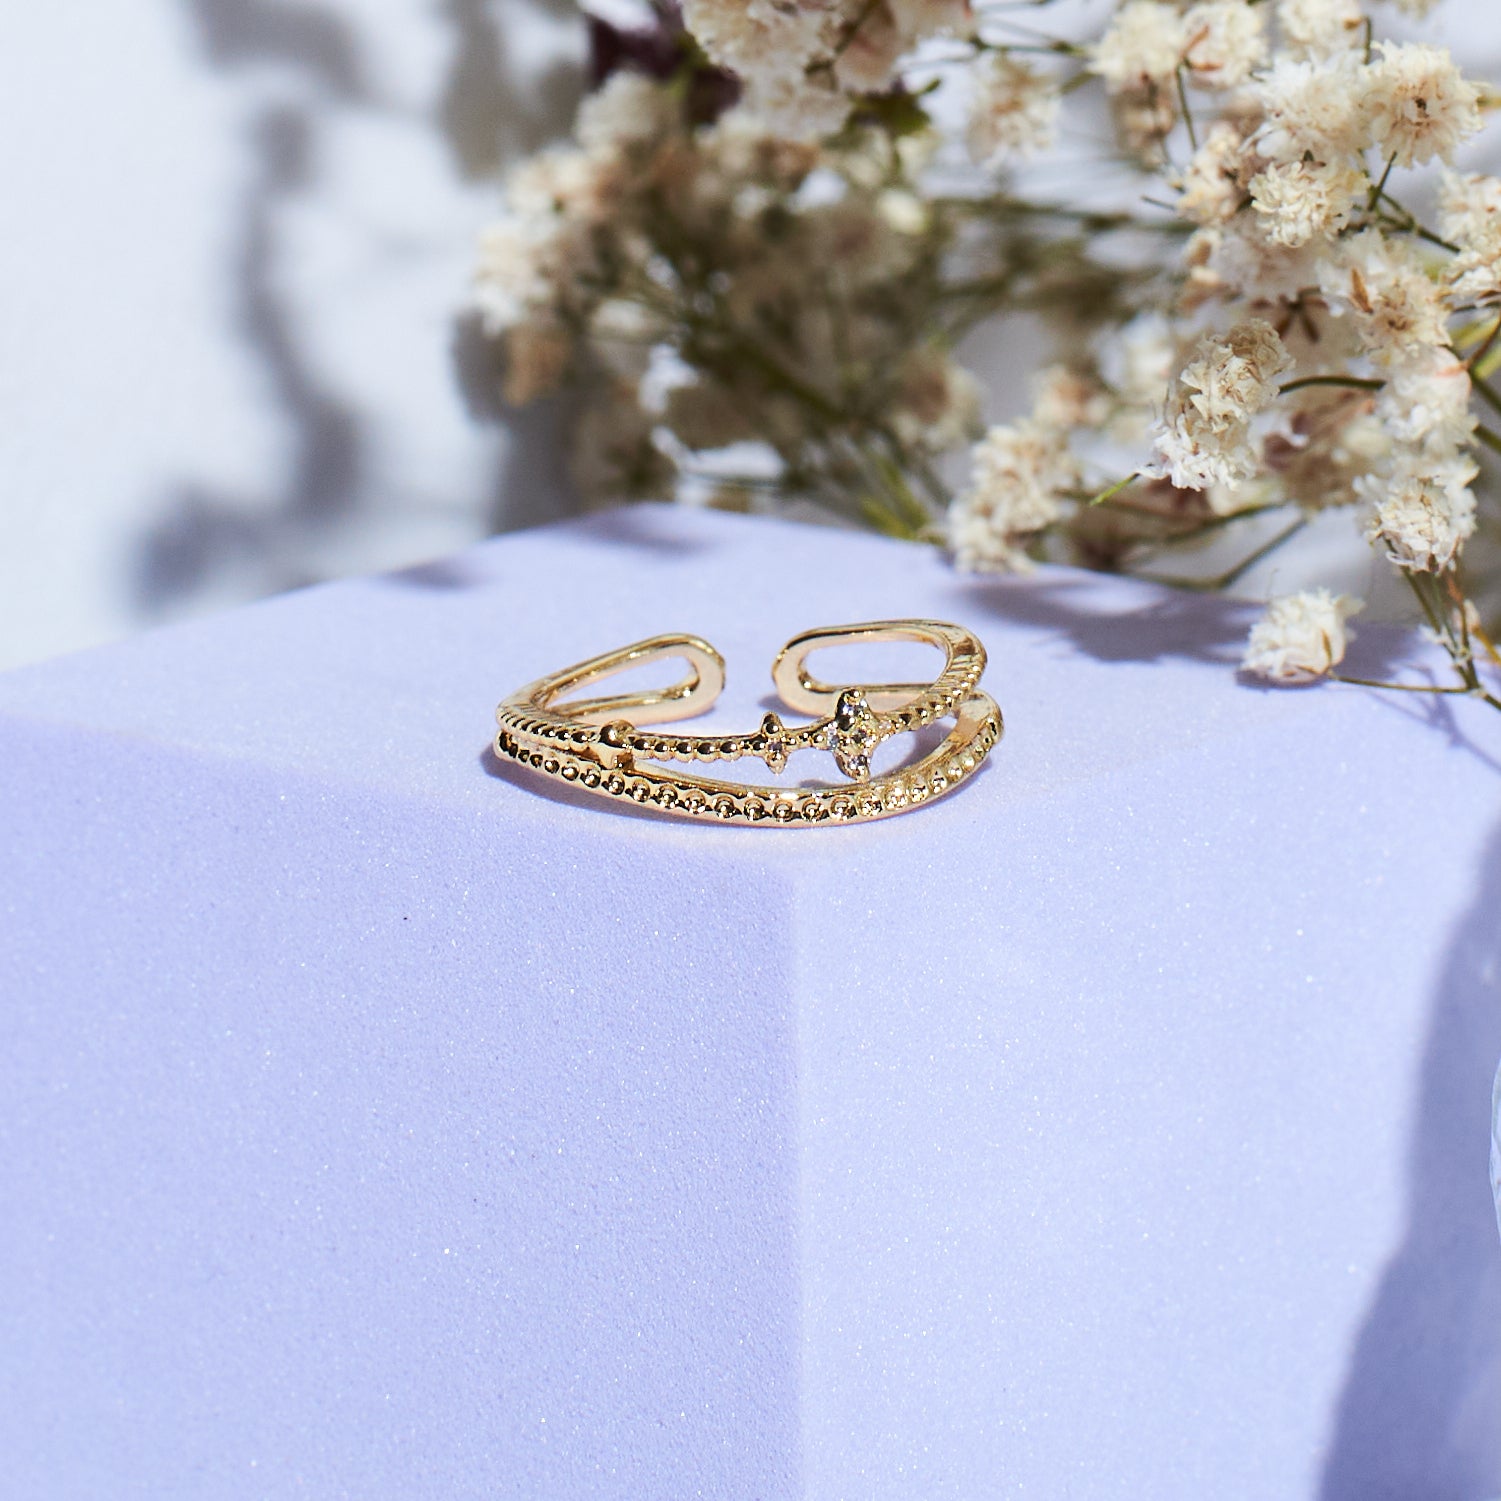 Adjustable Ring Women Love | Women Cute Jewelry Ring | Lovely Adjustable  Rings - Love - Aliexpress